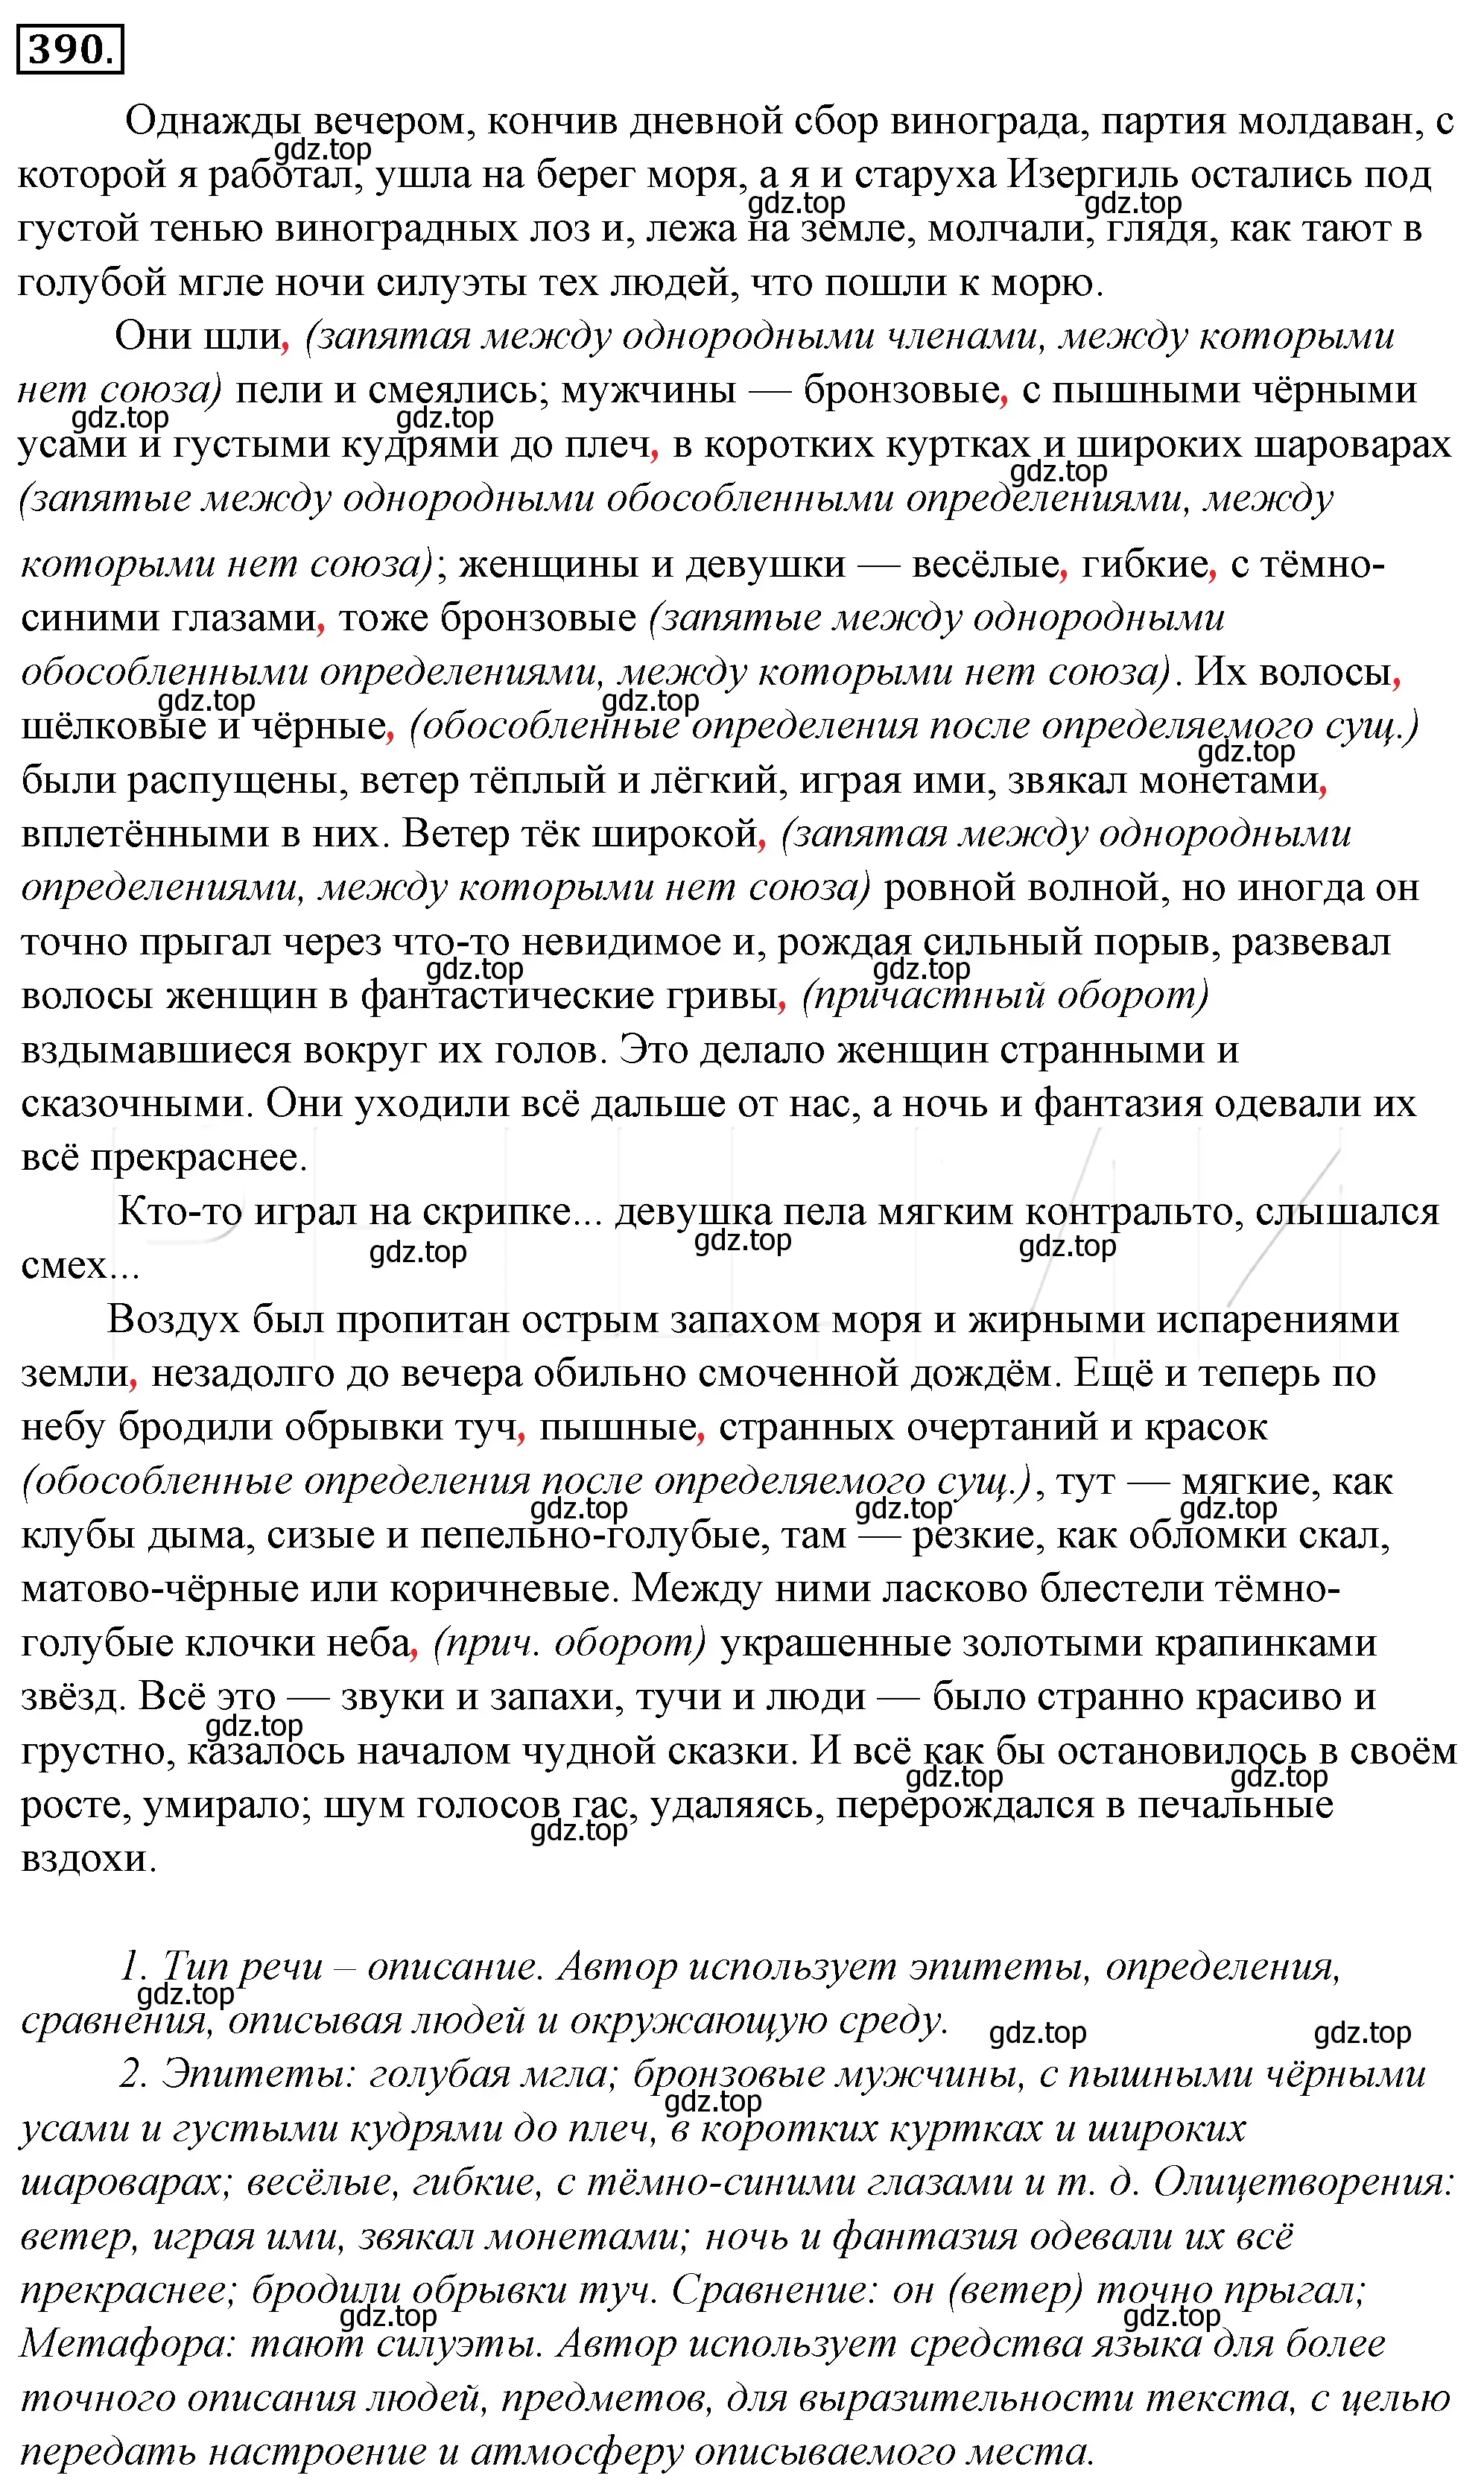 Решение 4. номер 55 (страница 74) гдз по русскому языку 10-11 класс Гольцова, Шамшин, учебник 2 часть